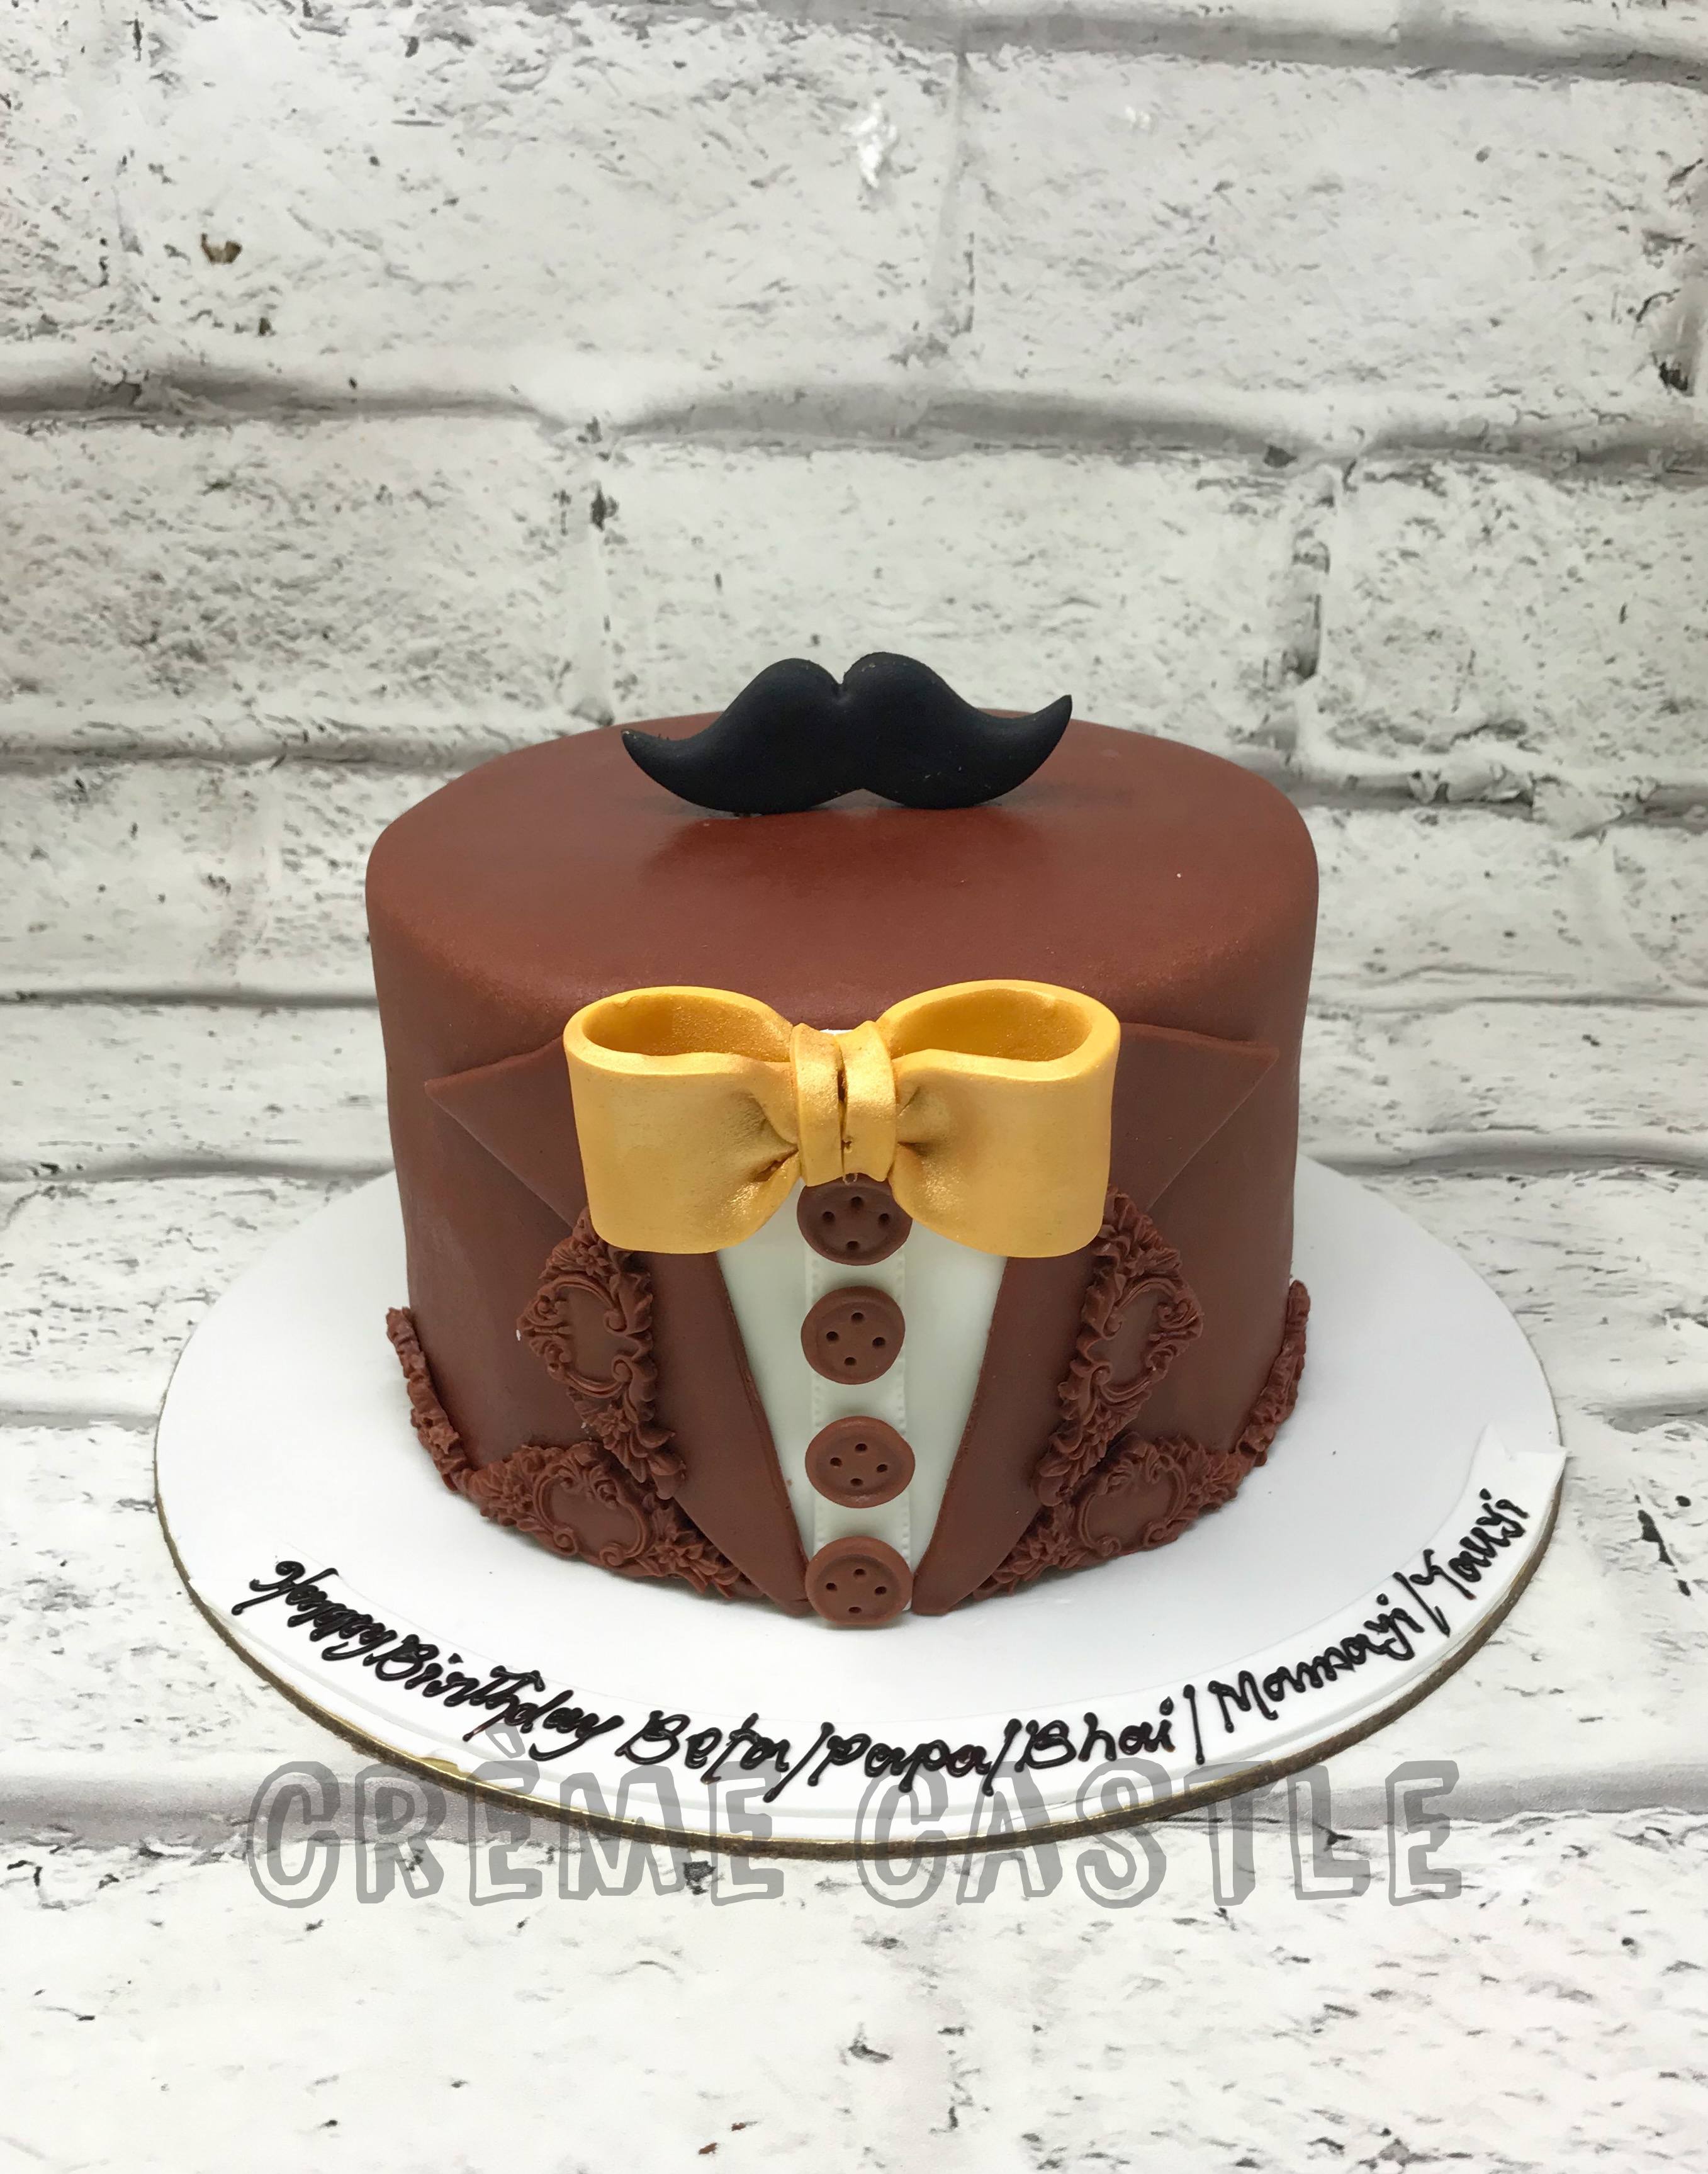 Brown Cake Images - Free Download on Freepik